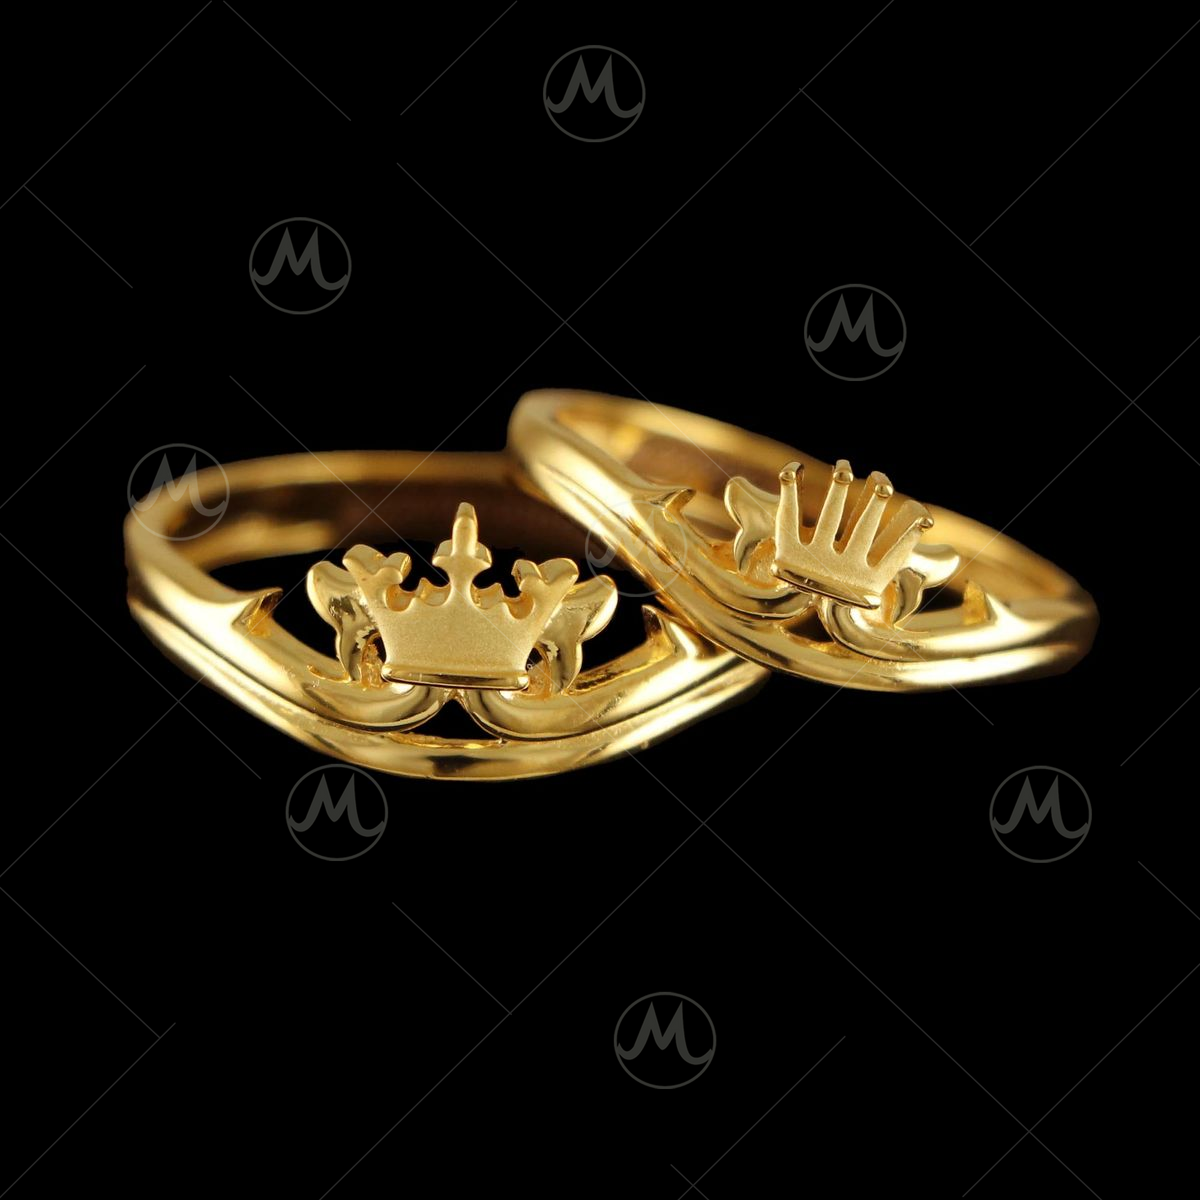 999.9 (24k) Pure Gold Shiny Unisex Band Ring 6.89 Grams. Size 7 | eBay